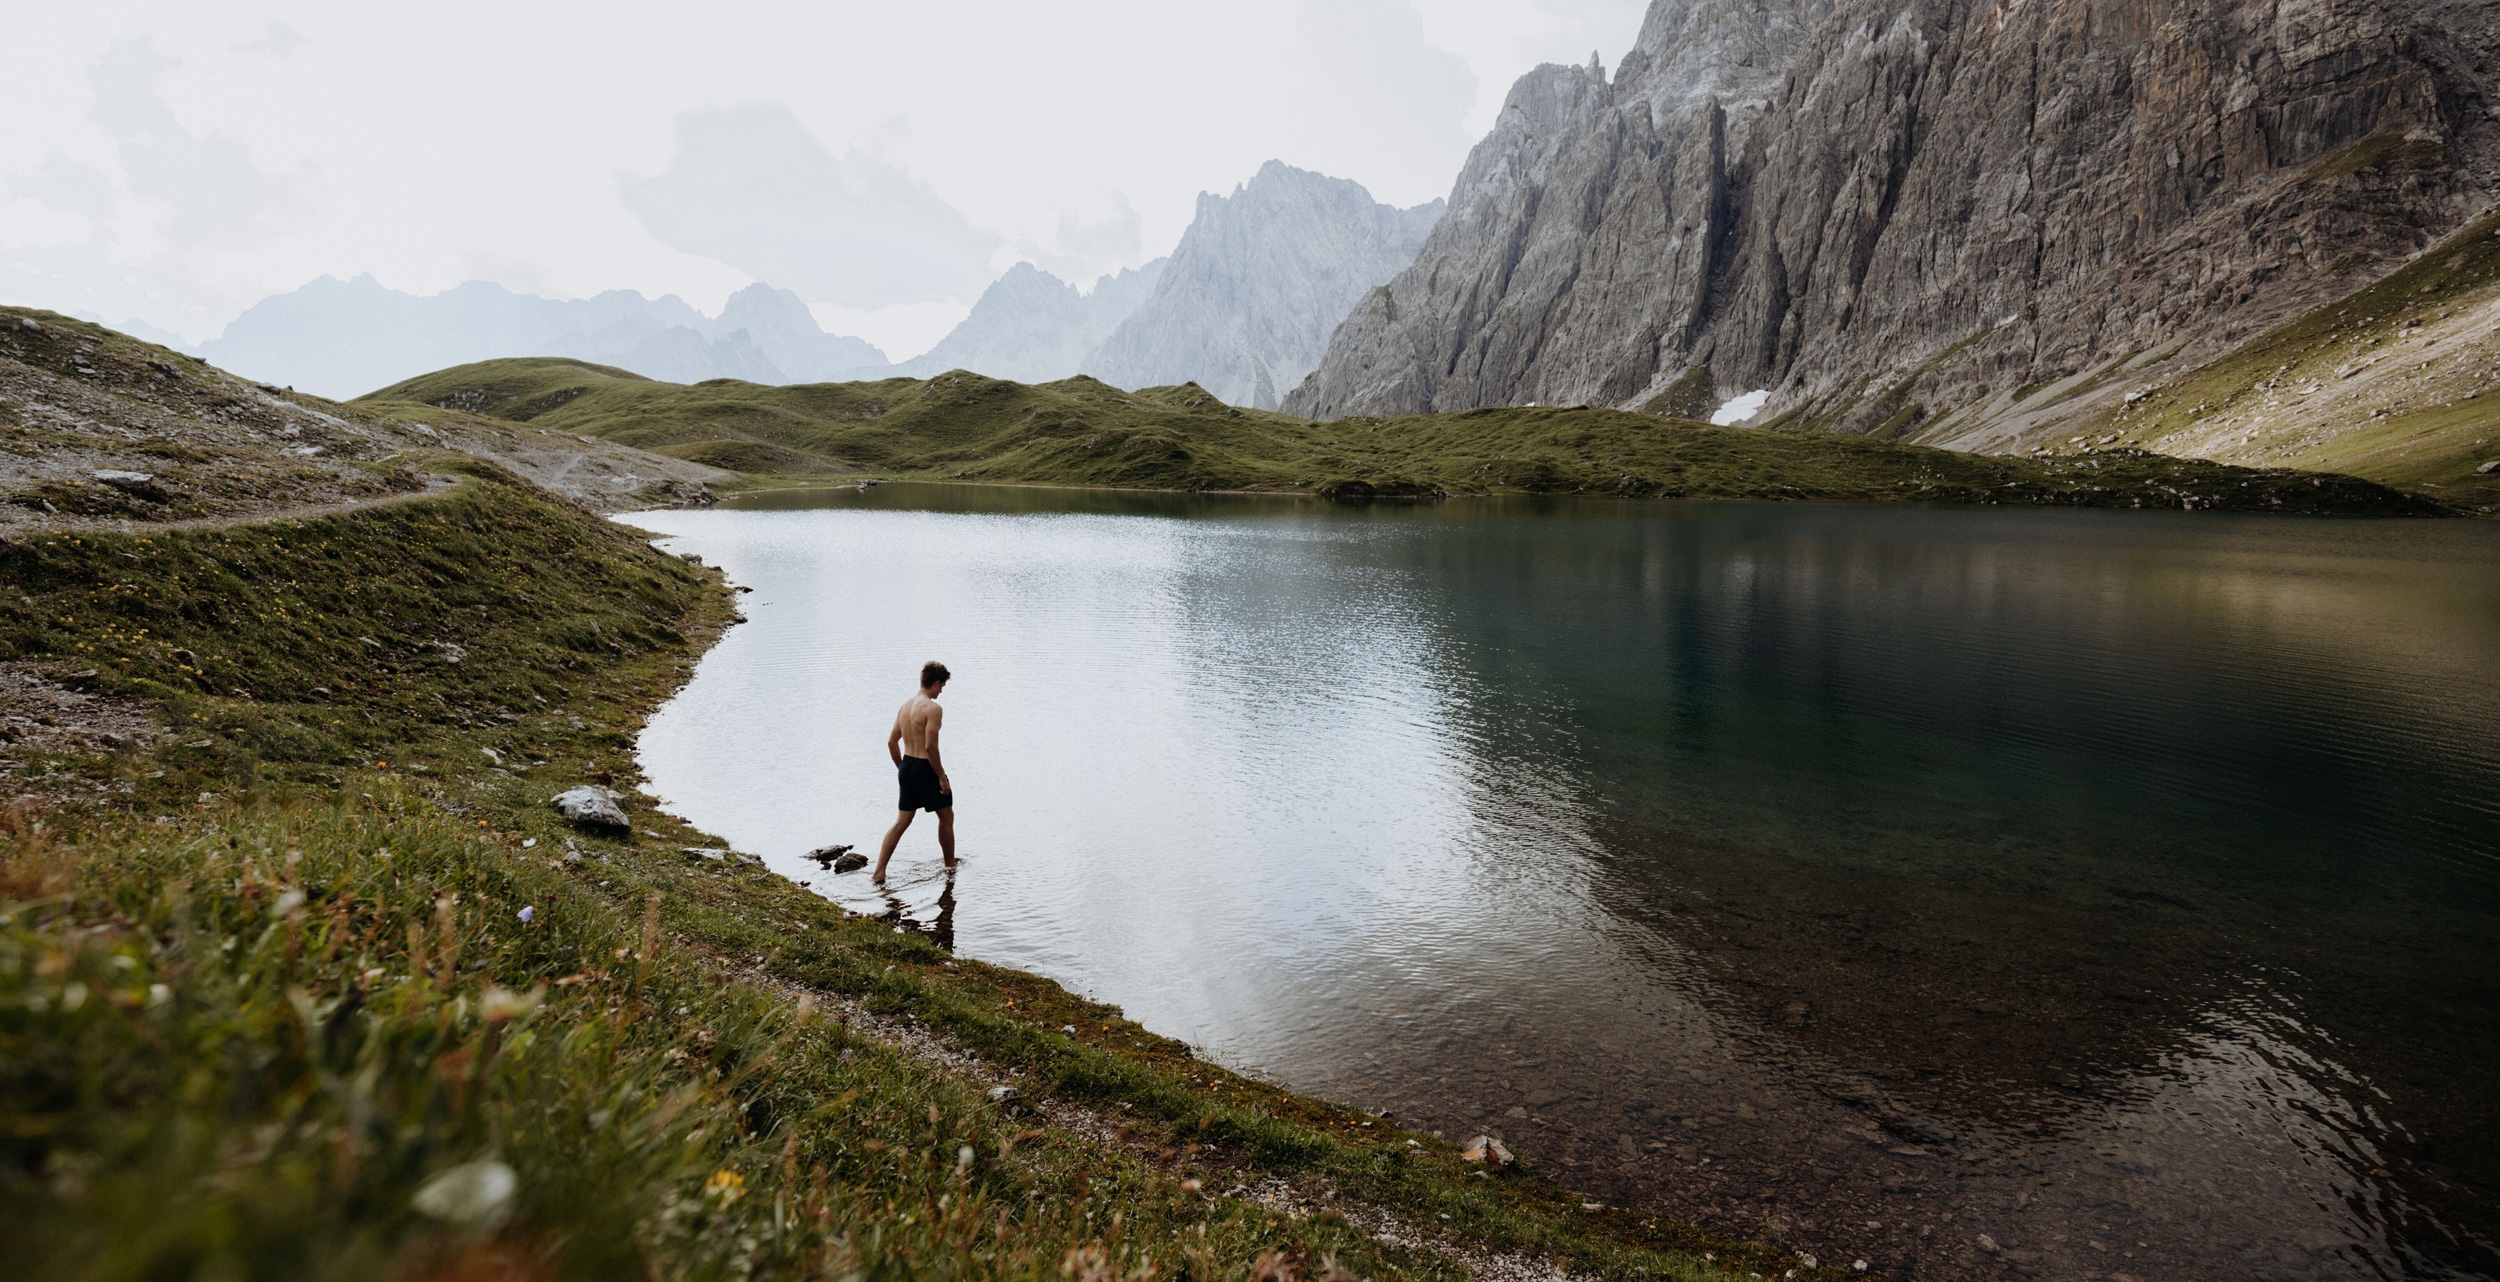 Man by a mountain lake